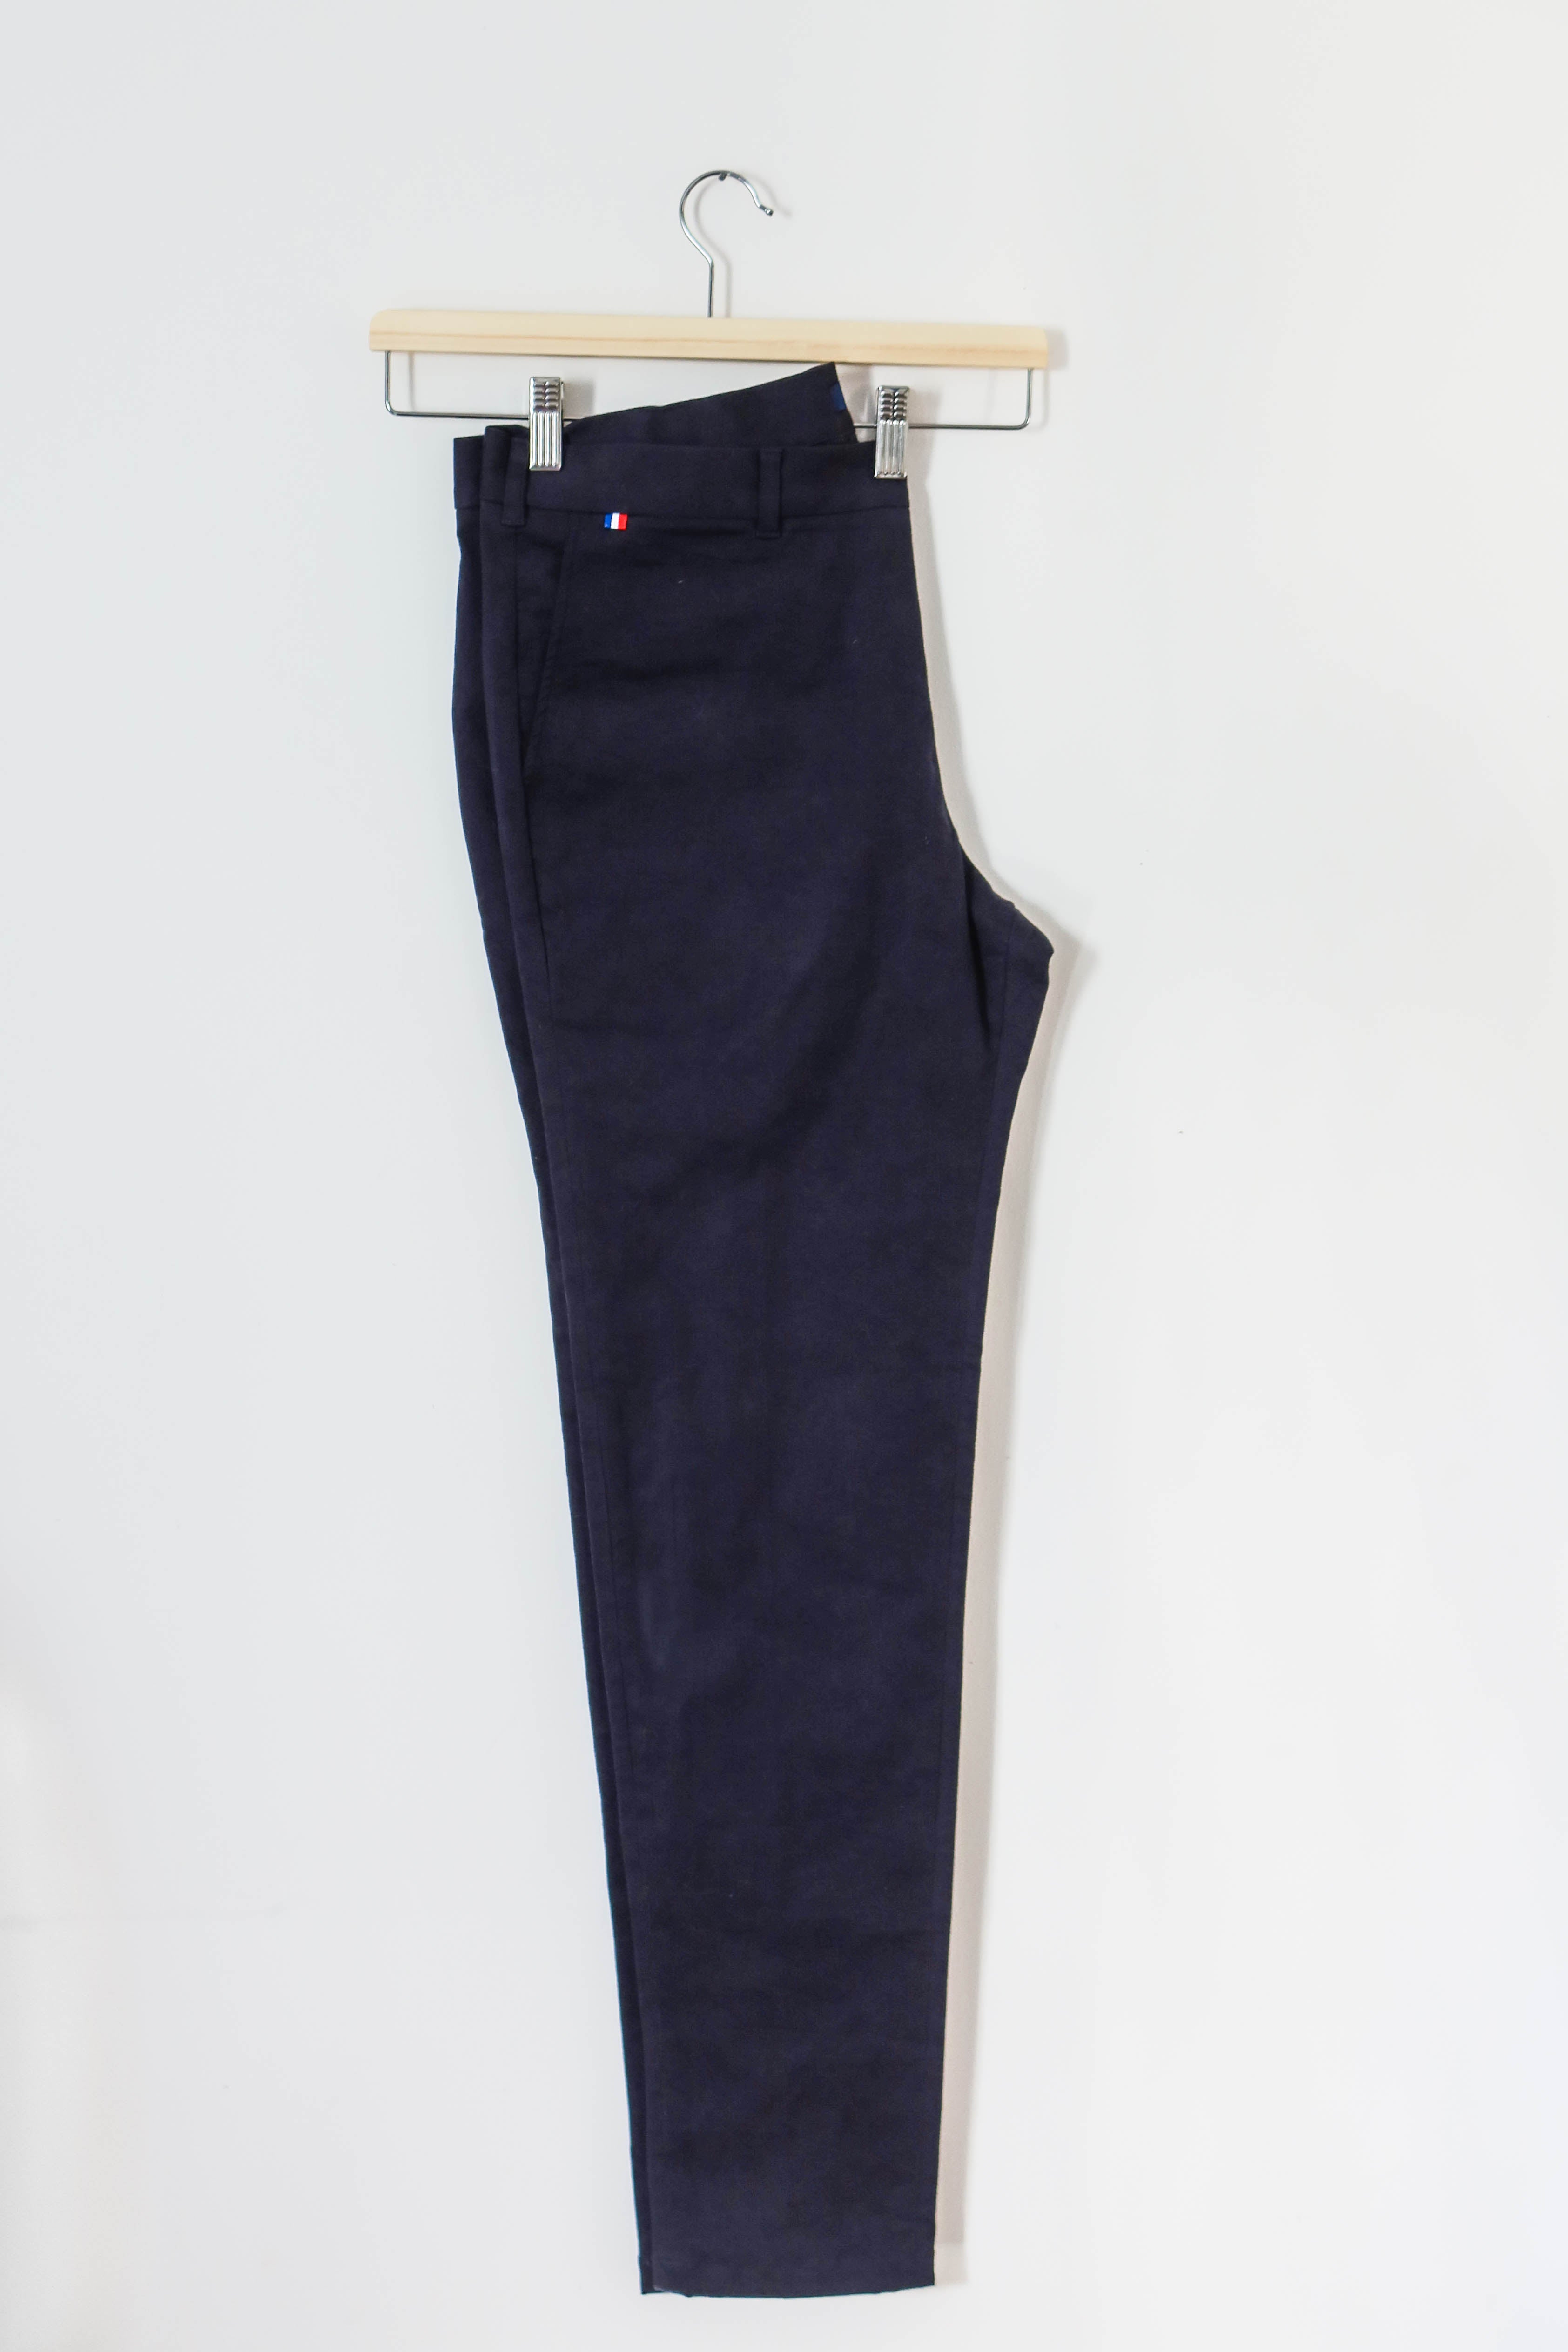 Pantalon chino bleu marine fabriqué en France, vu sur cintre. 